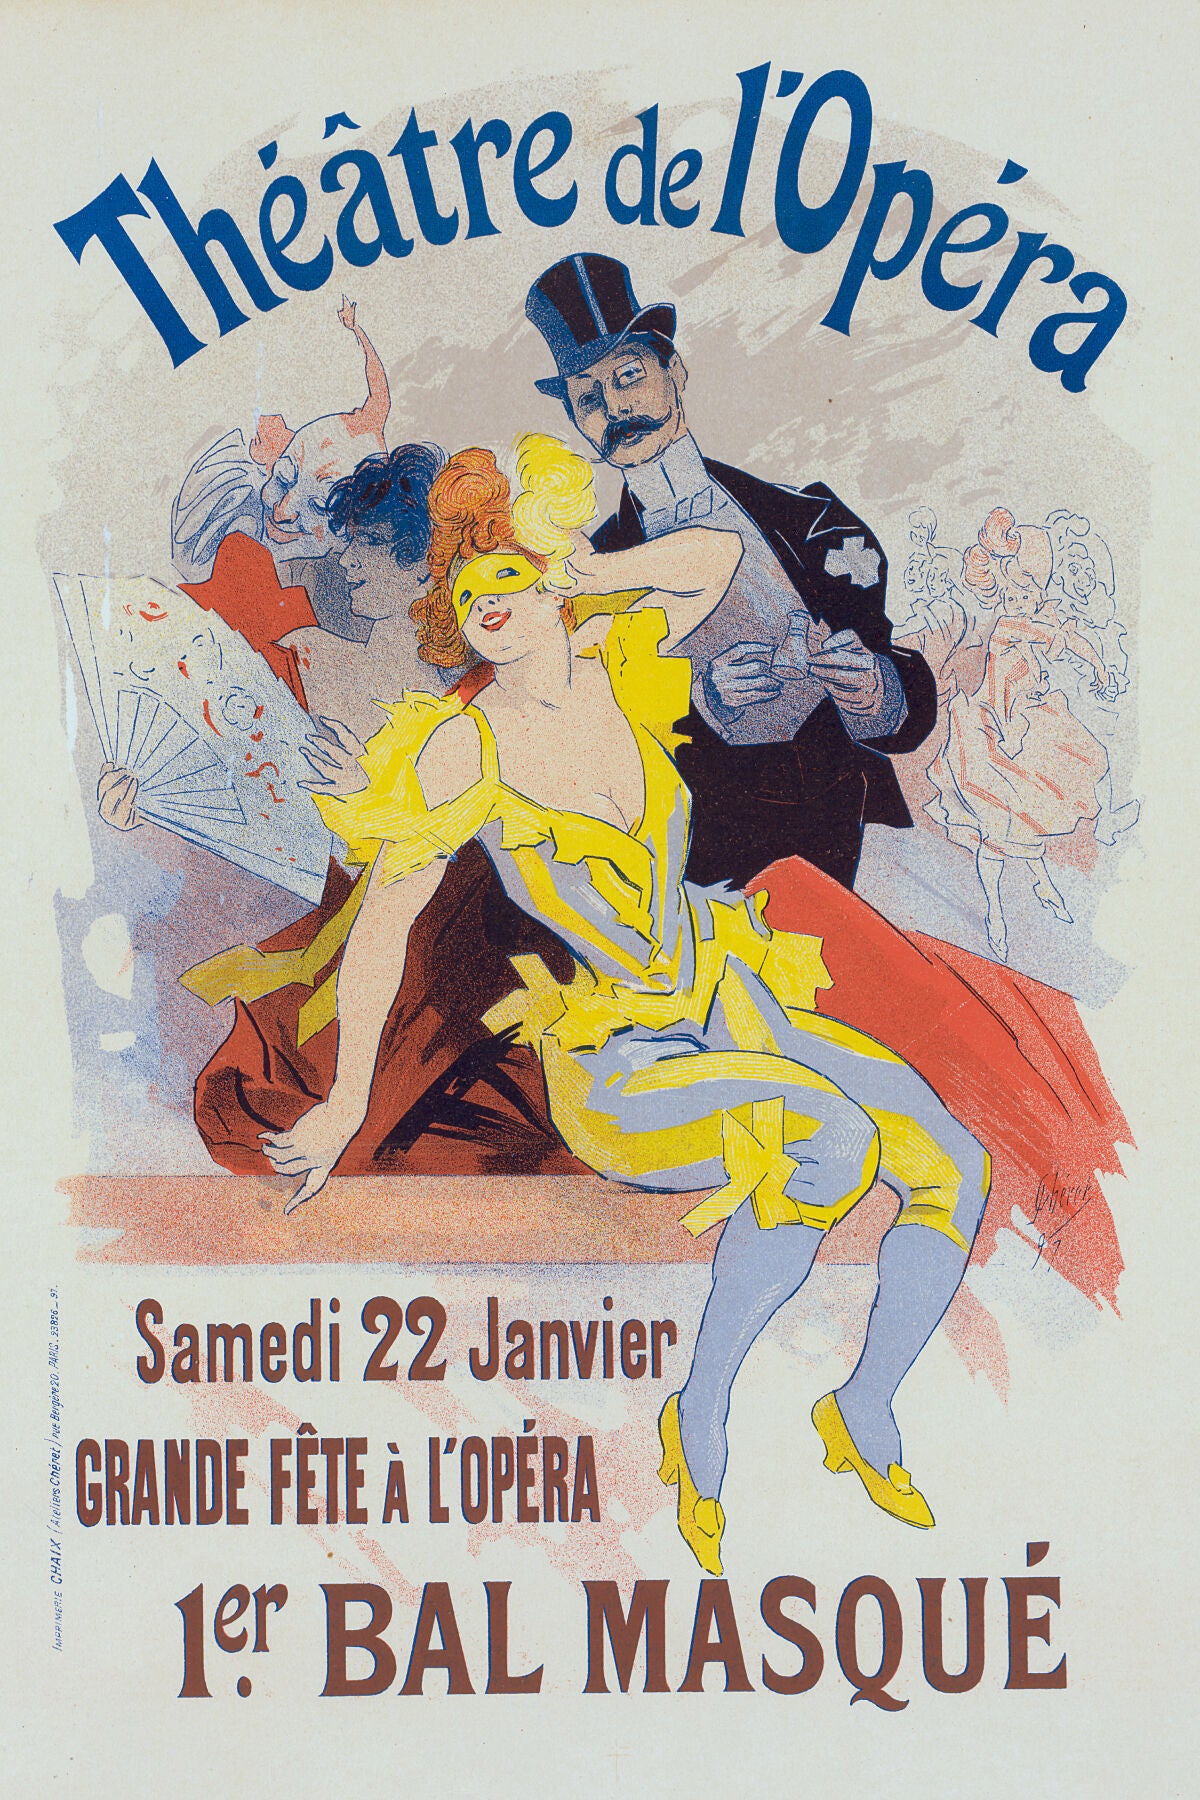 Poster for the 1er. bal masqué, la Grande Fête à l'Opéra, 22 janvier 1898